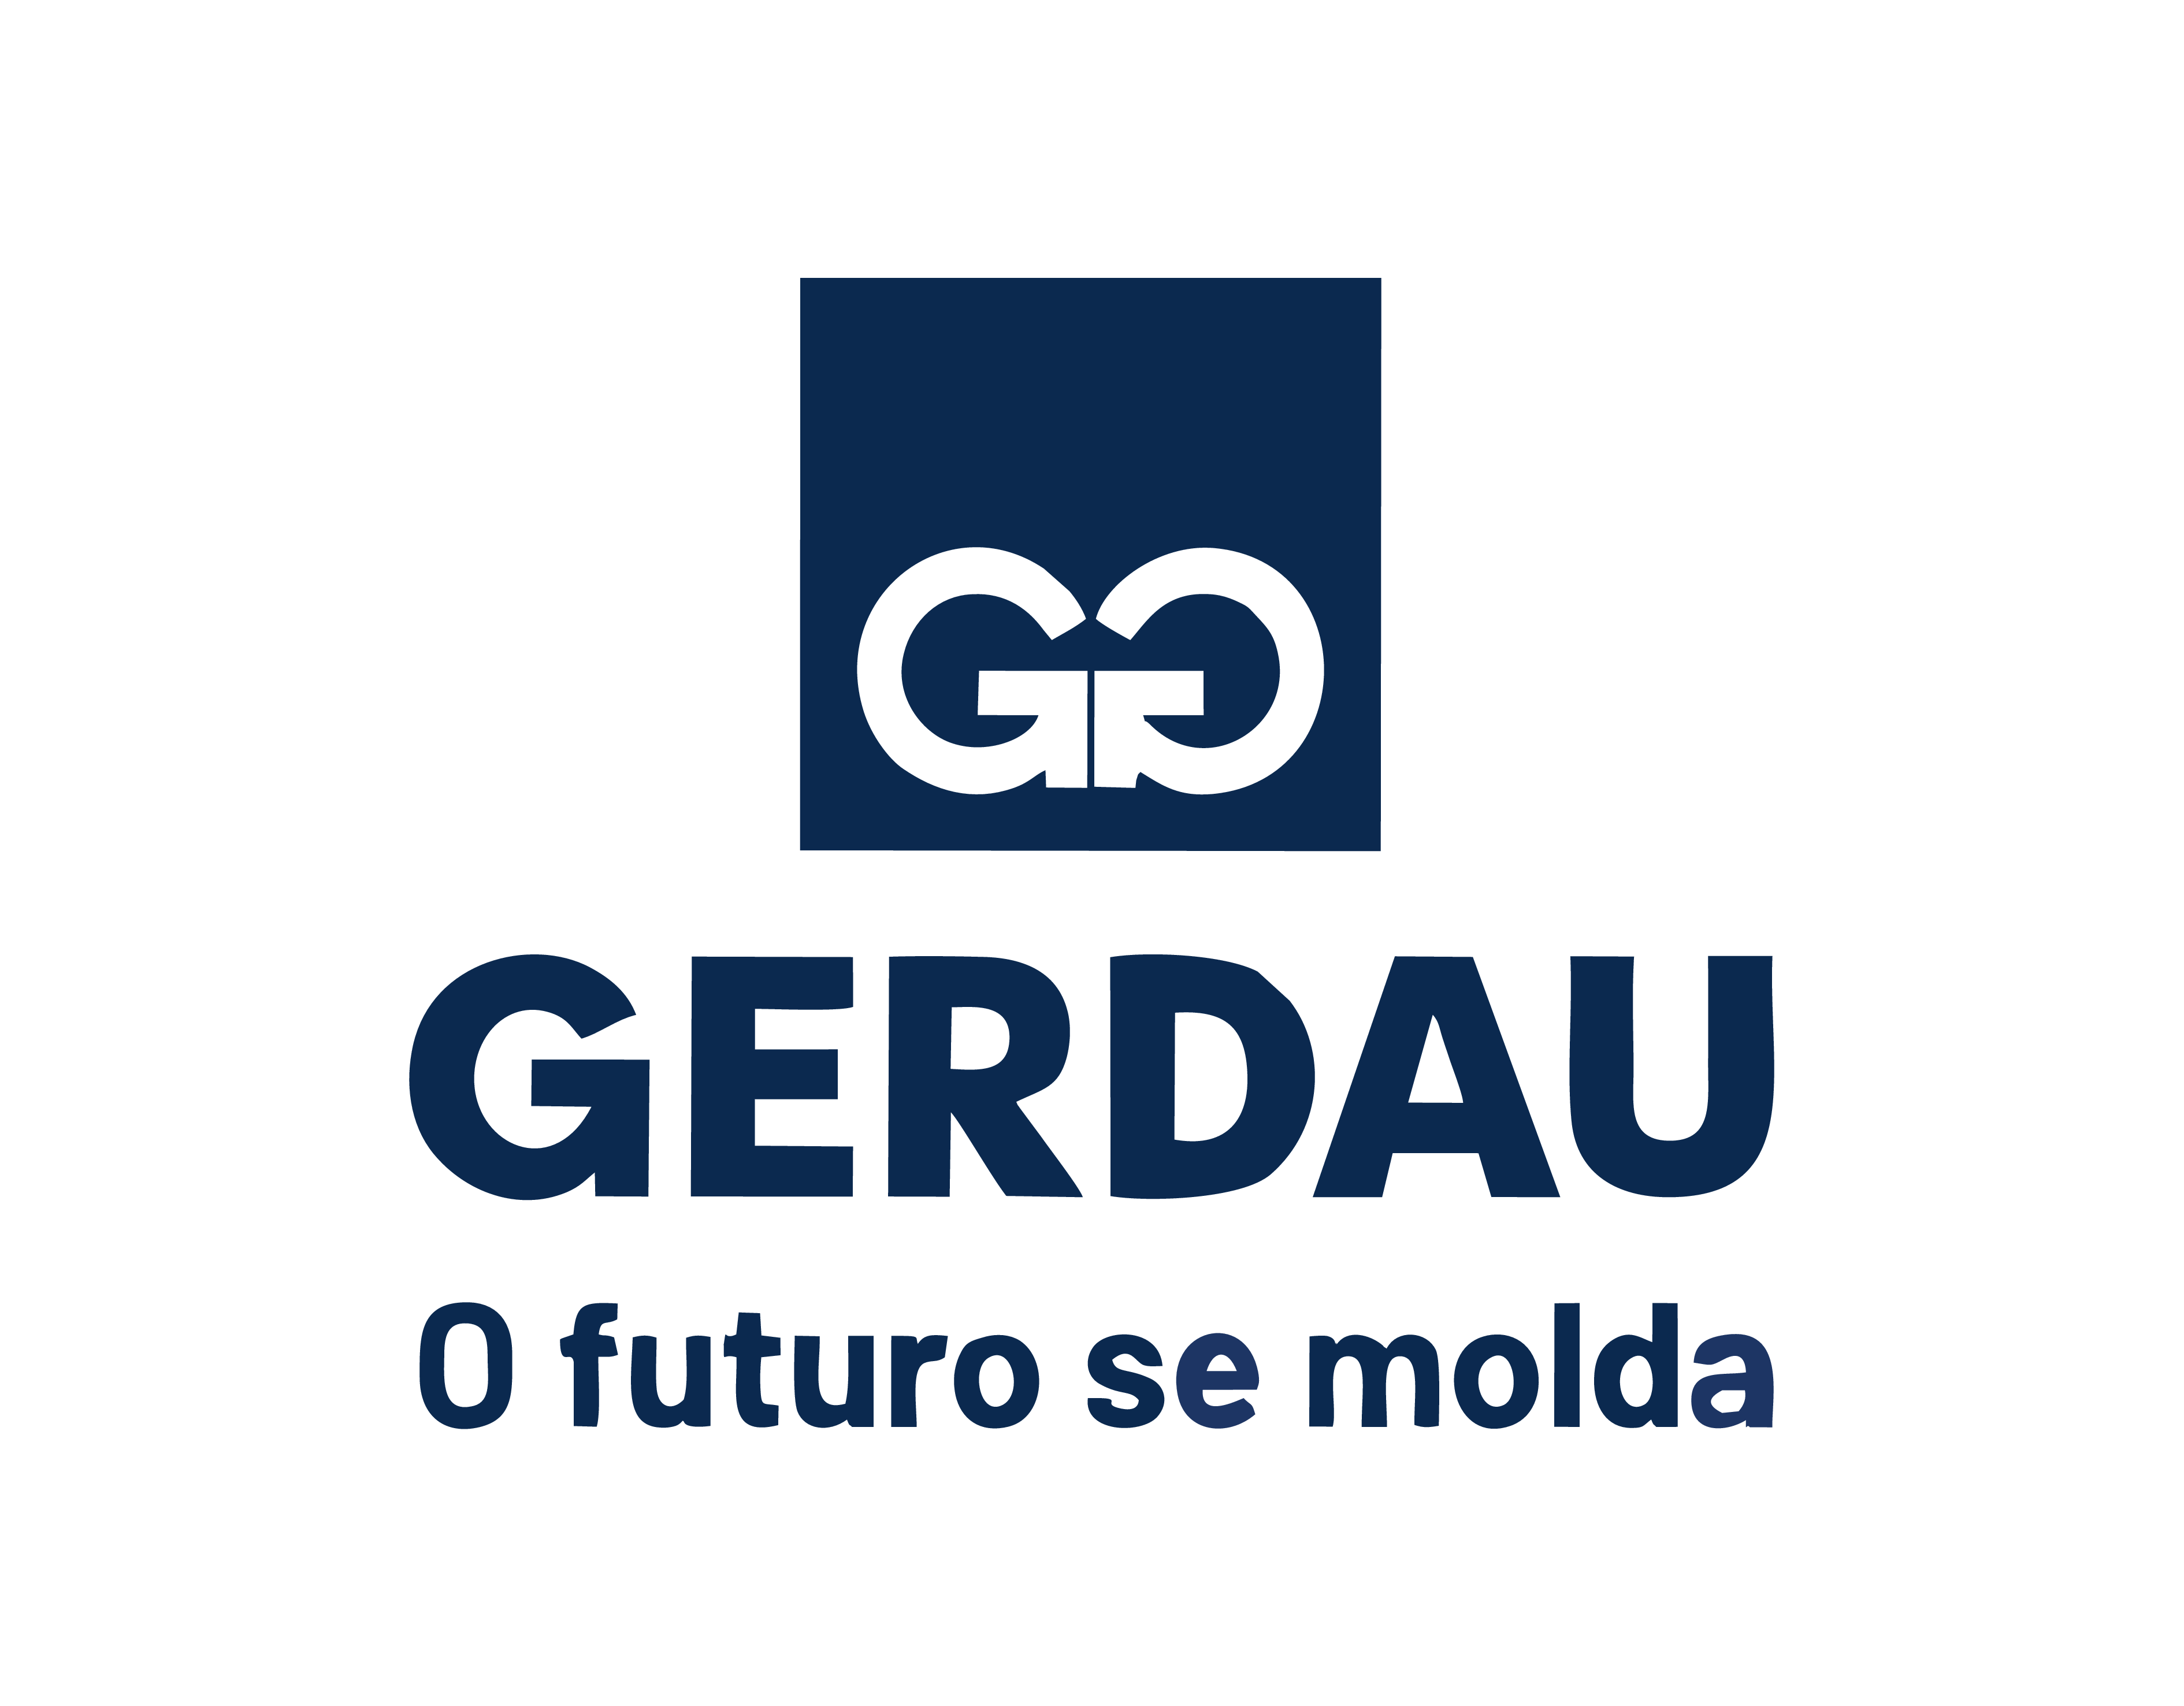 gerdau logo